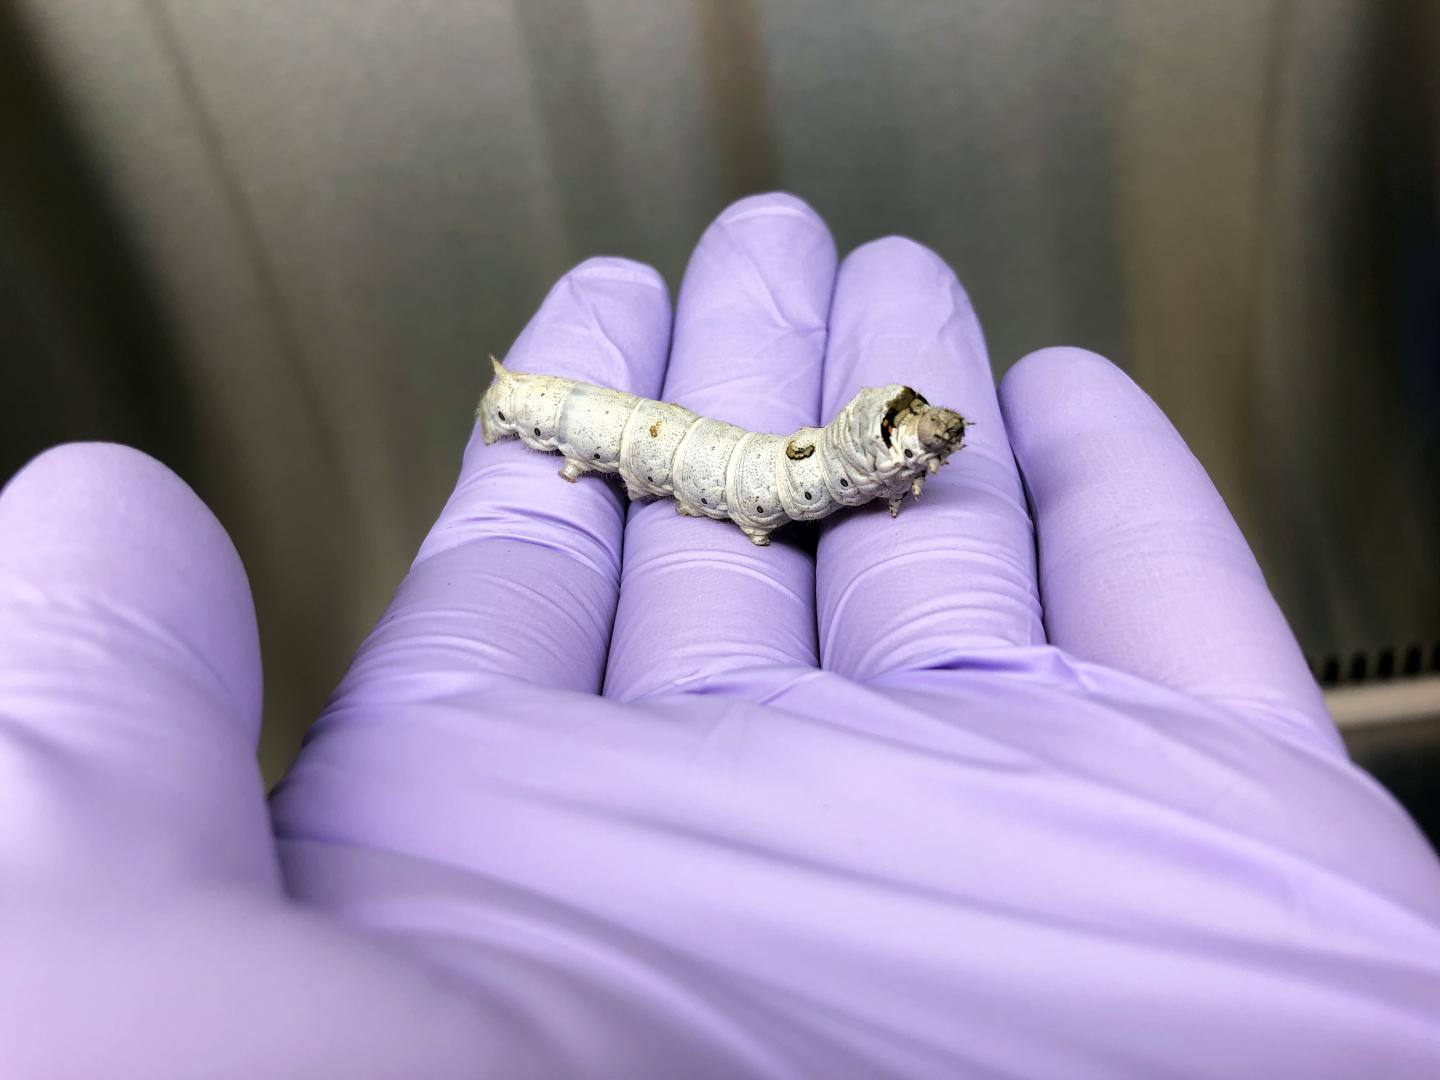 Silkworm, a Useful Animal Infection Model